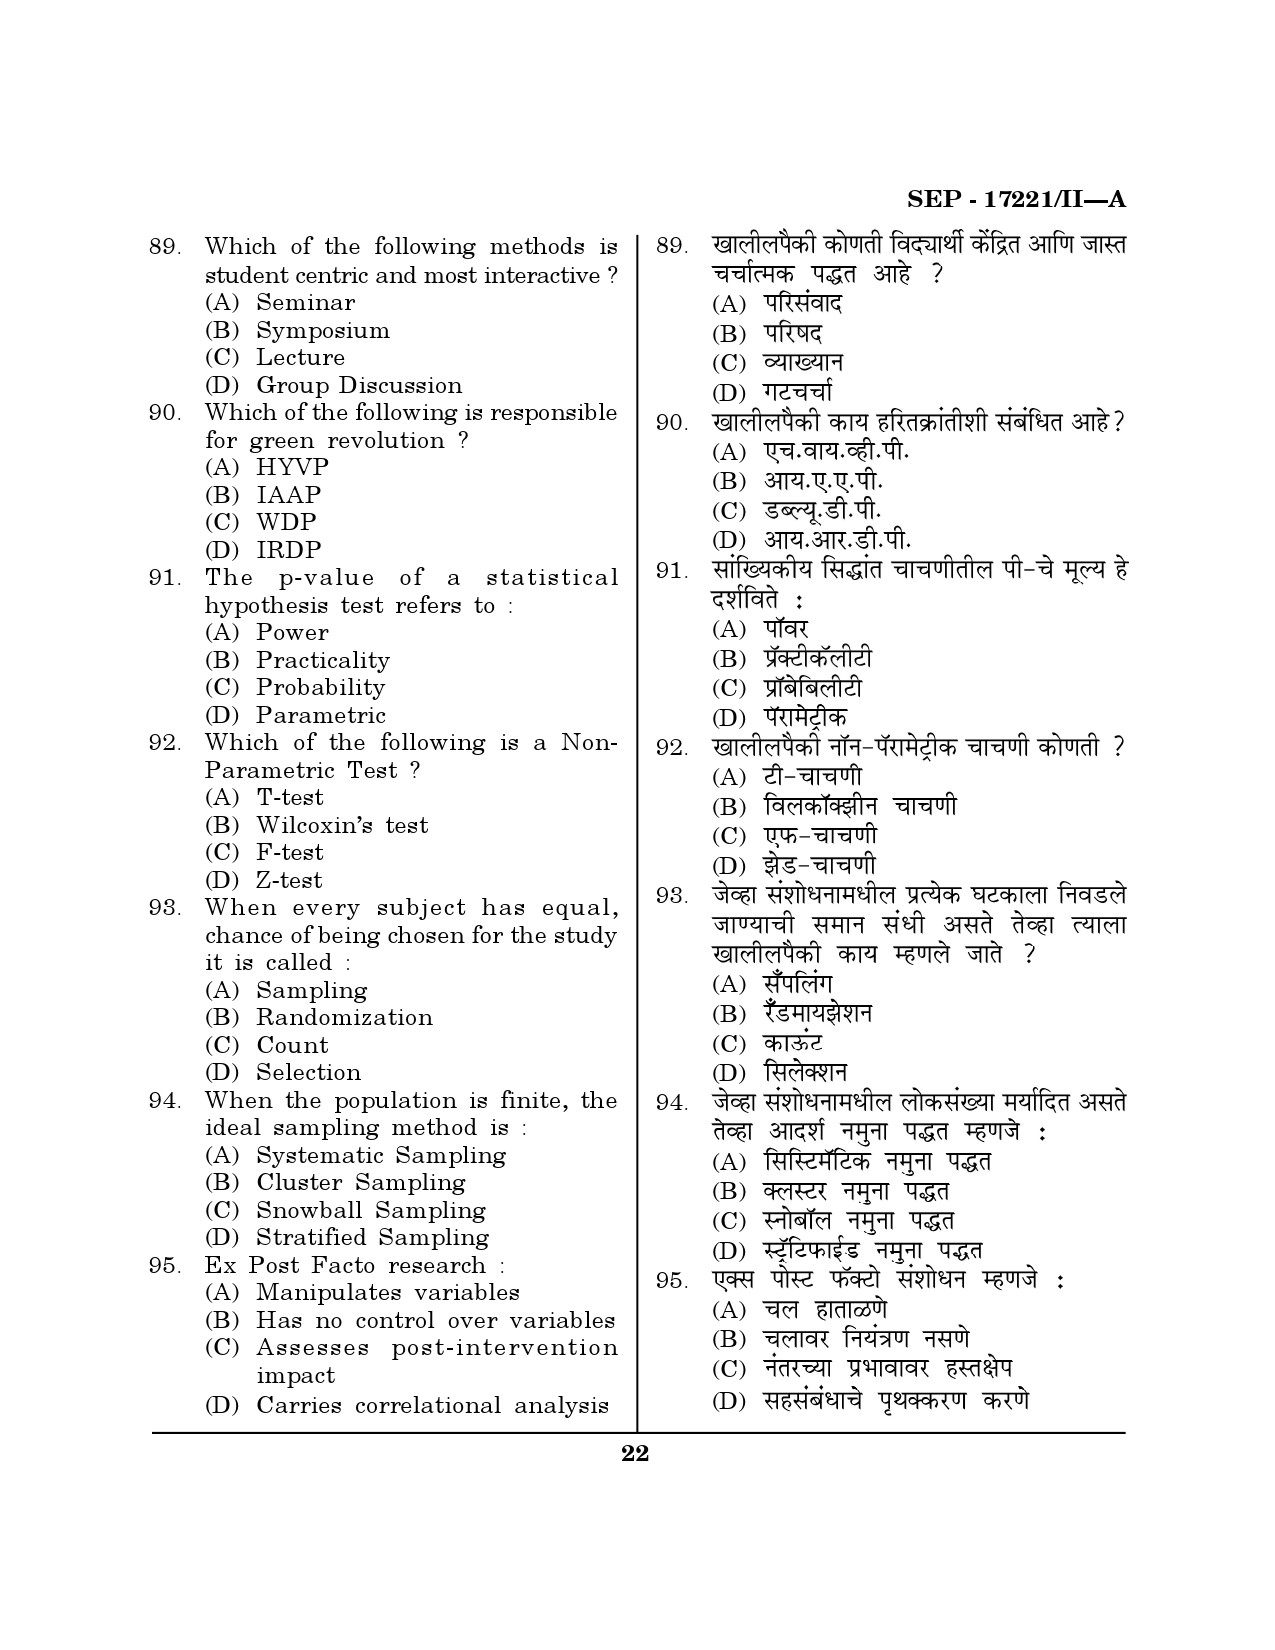 Maharashtra SET Home Science Exam Question Paper September 2021 21